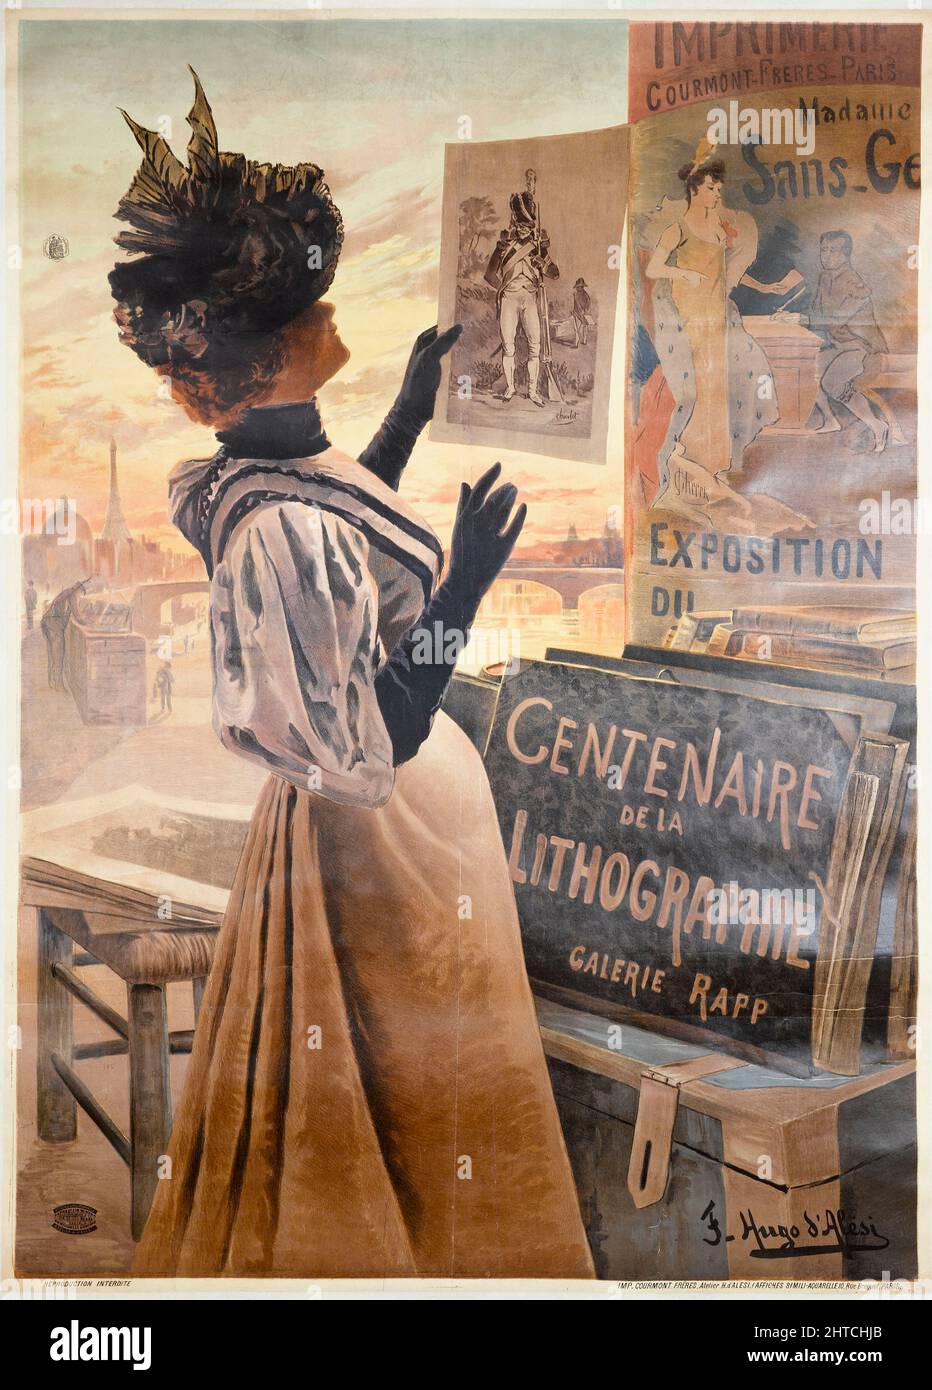 Centenaire de la Lithographie, Galerie Rapp, 1895. Colección privada. Foto de stock